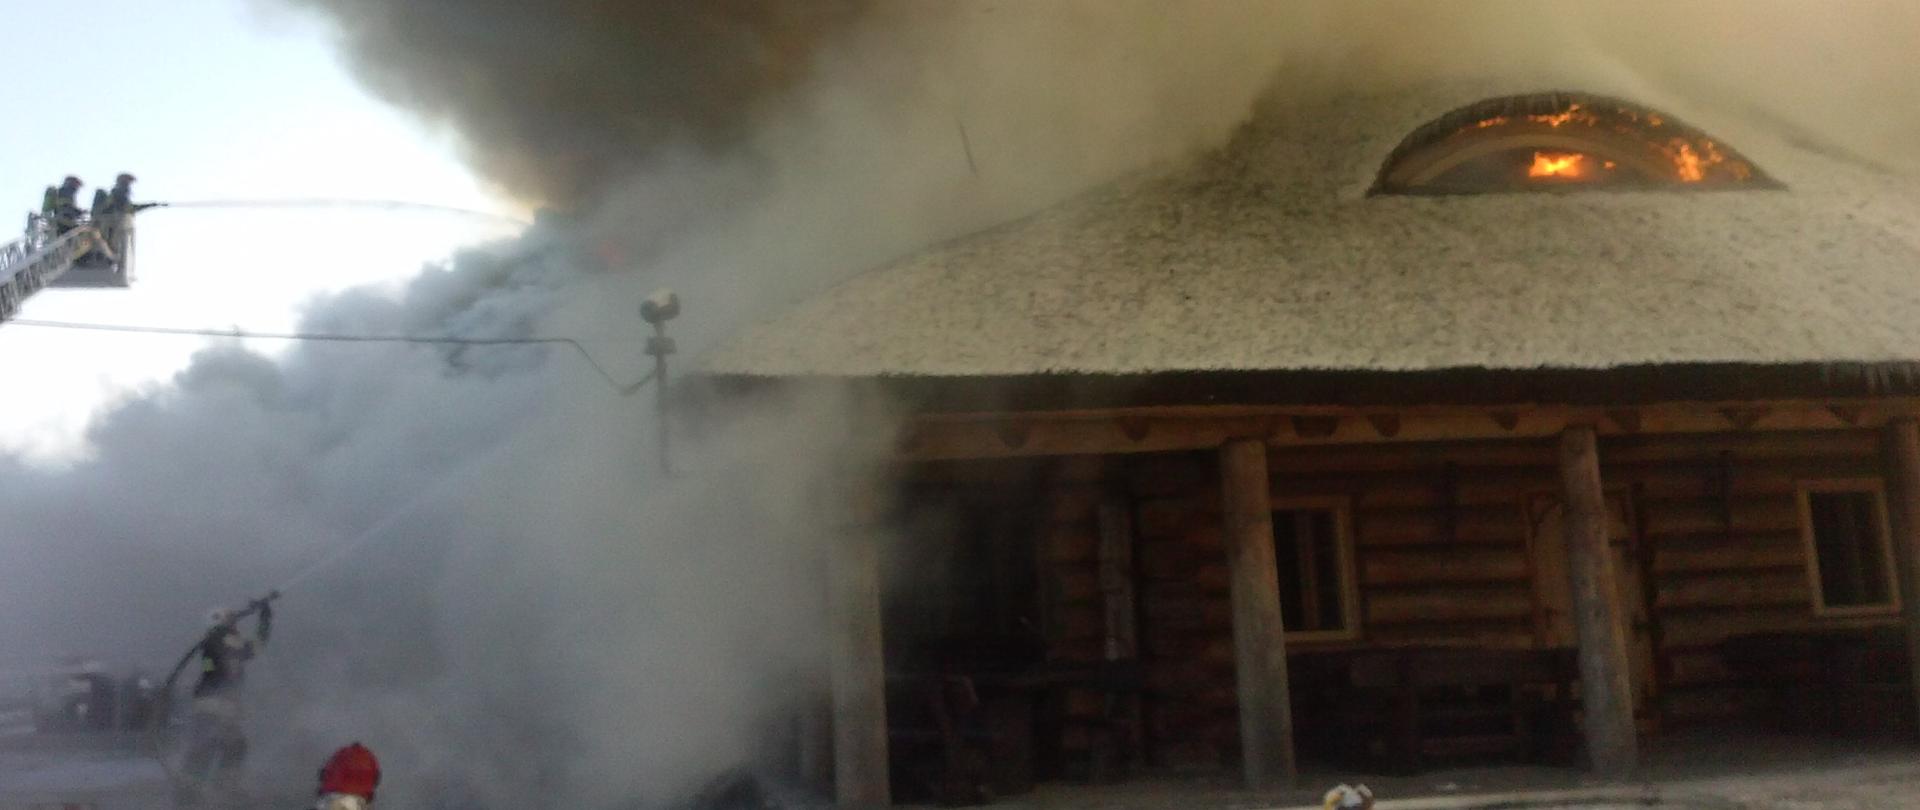 płonący dach drewnianego, parterowego budynku, po lewej stronie strażacy na podnośniku gaszący pożar